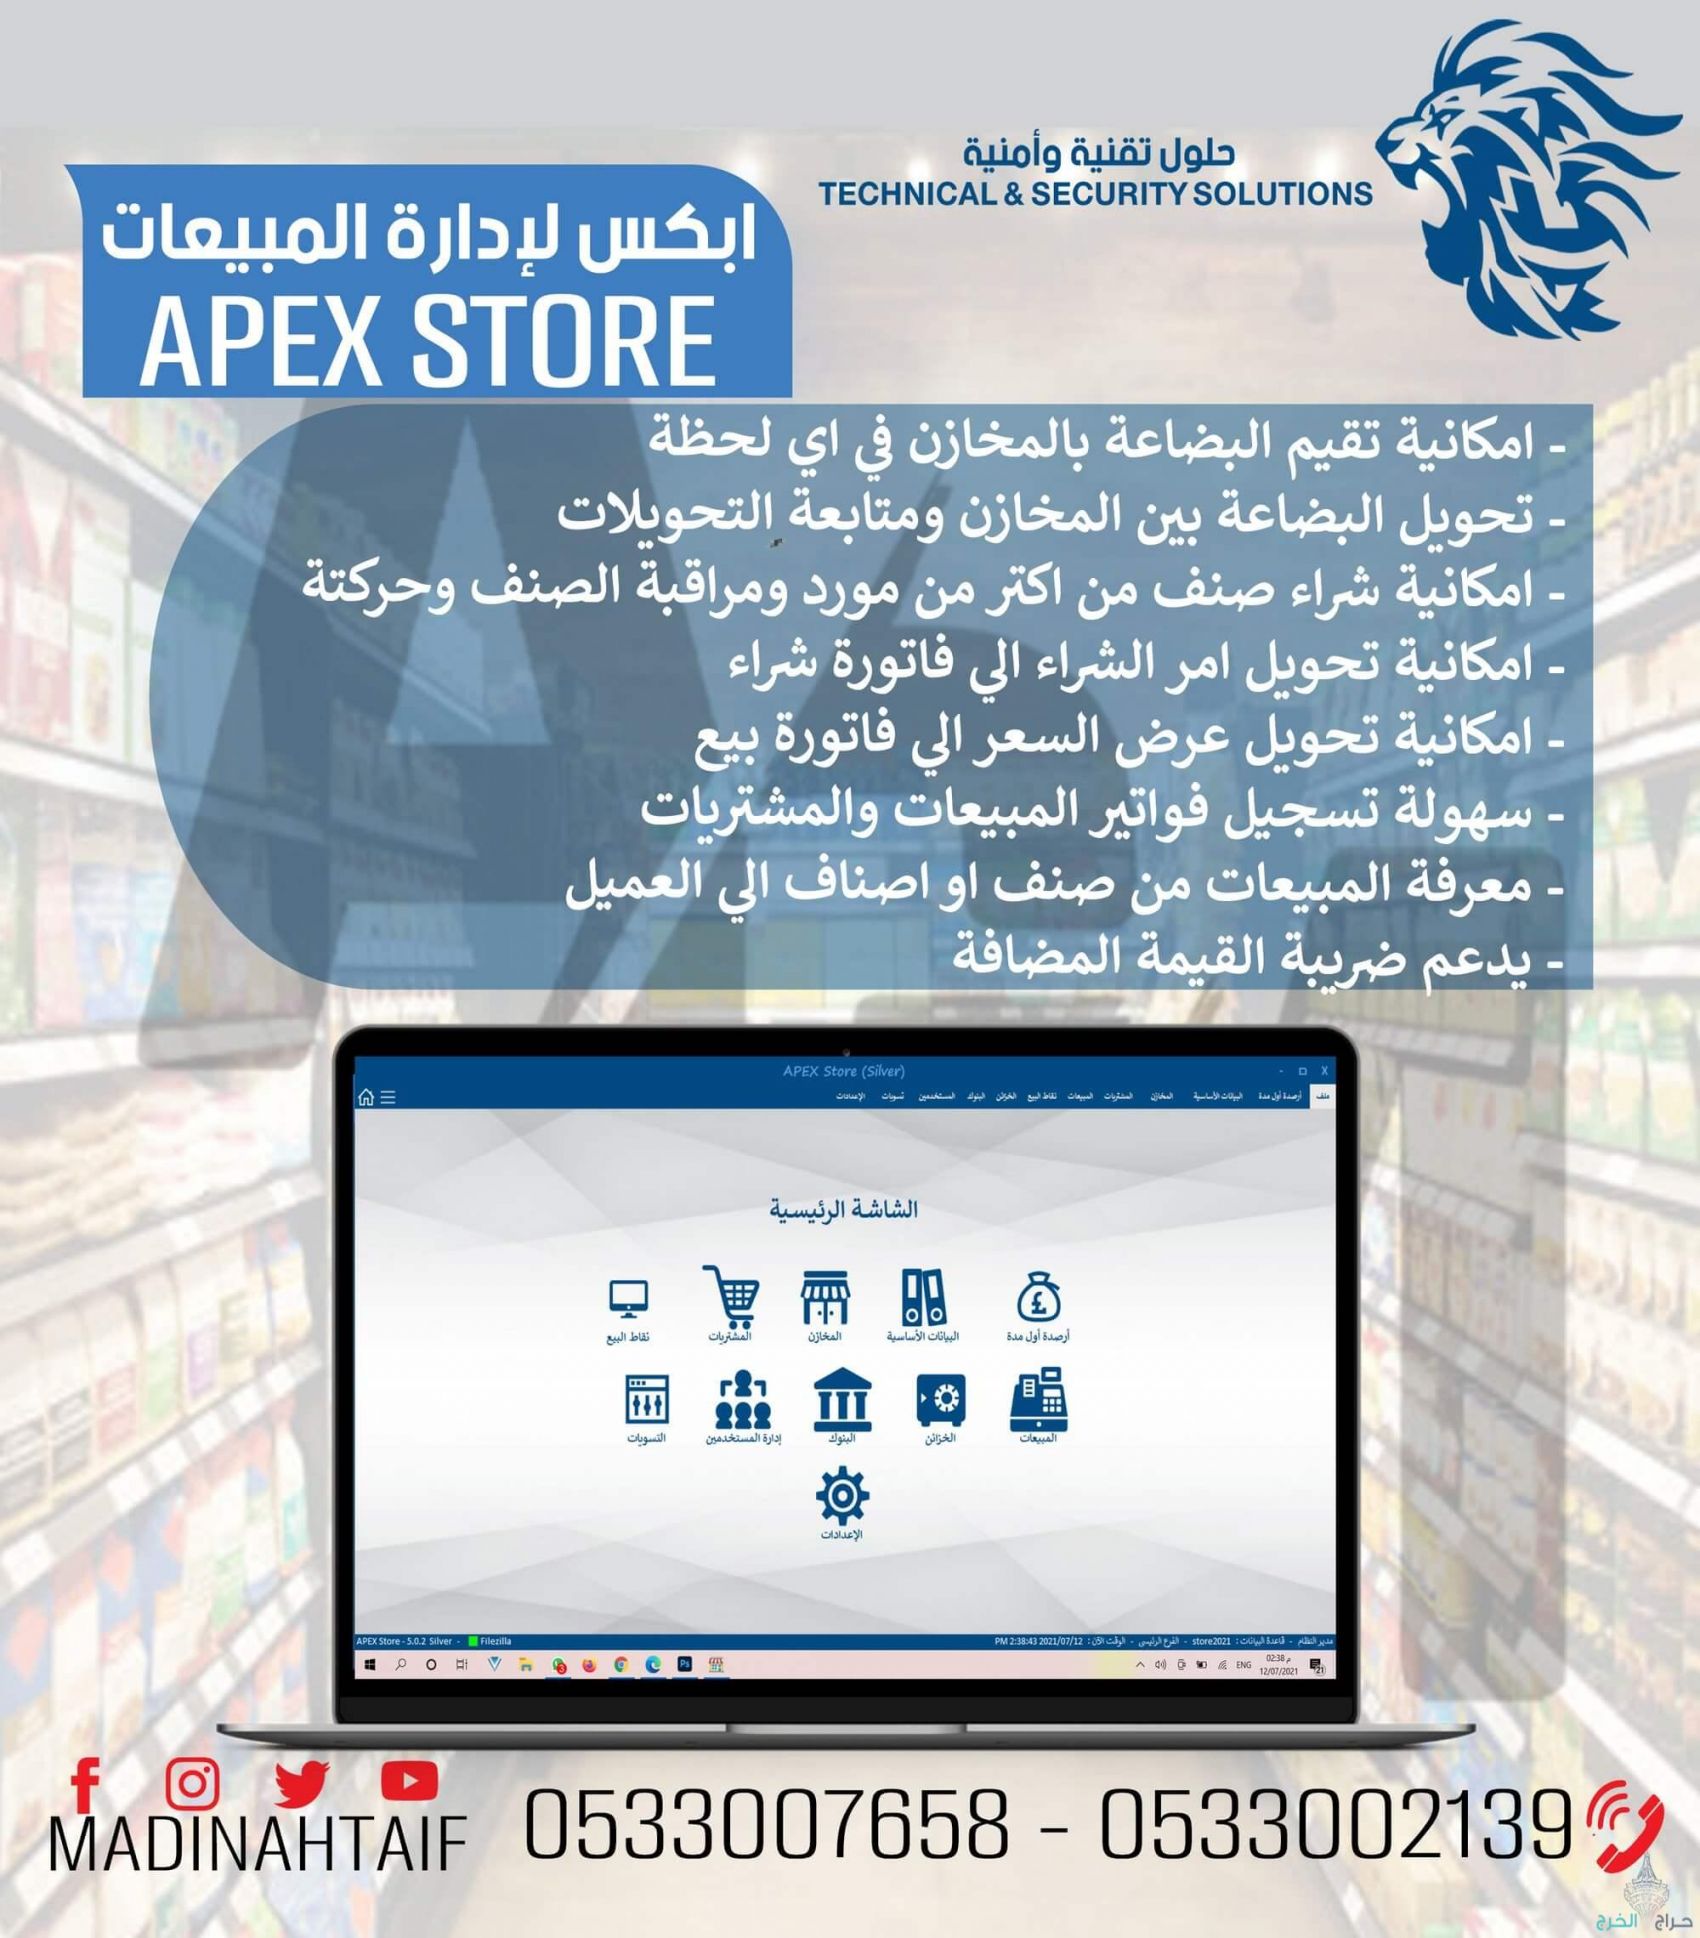 ارخص جهاز كاشير في المملكة مع برنامج معتمد ويدعم الفاتورة الالكترونية casher for store